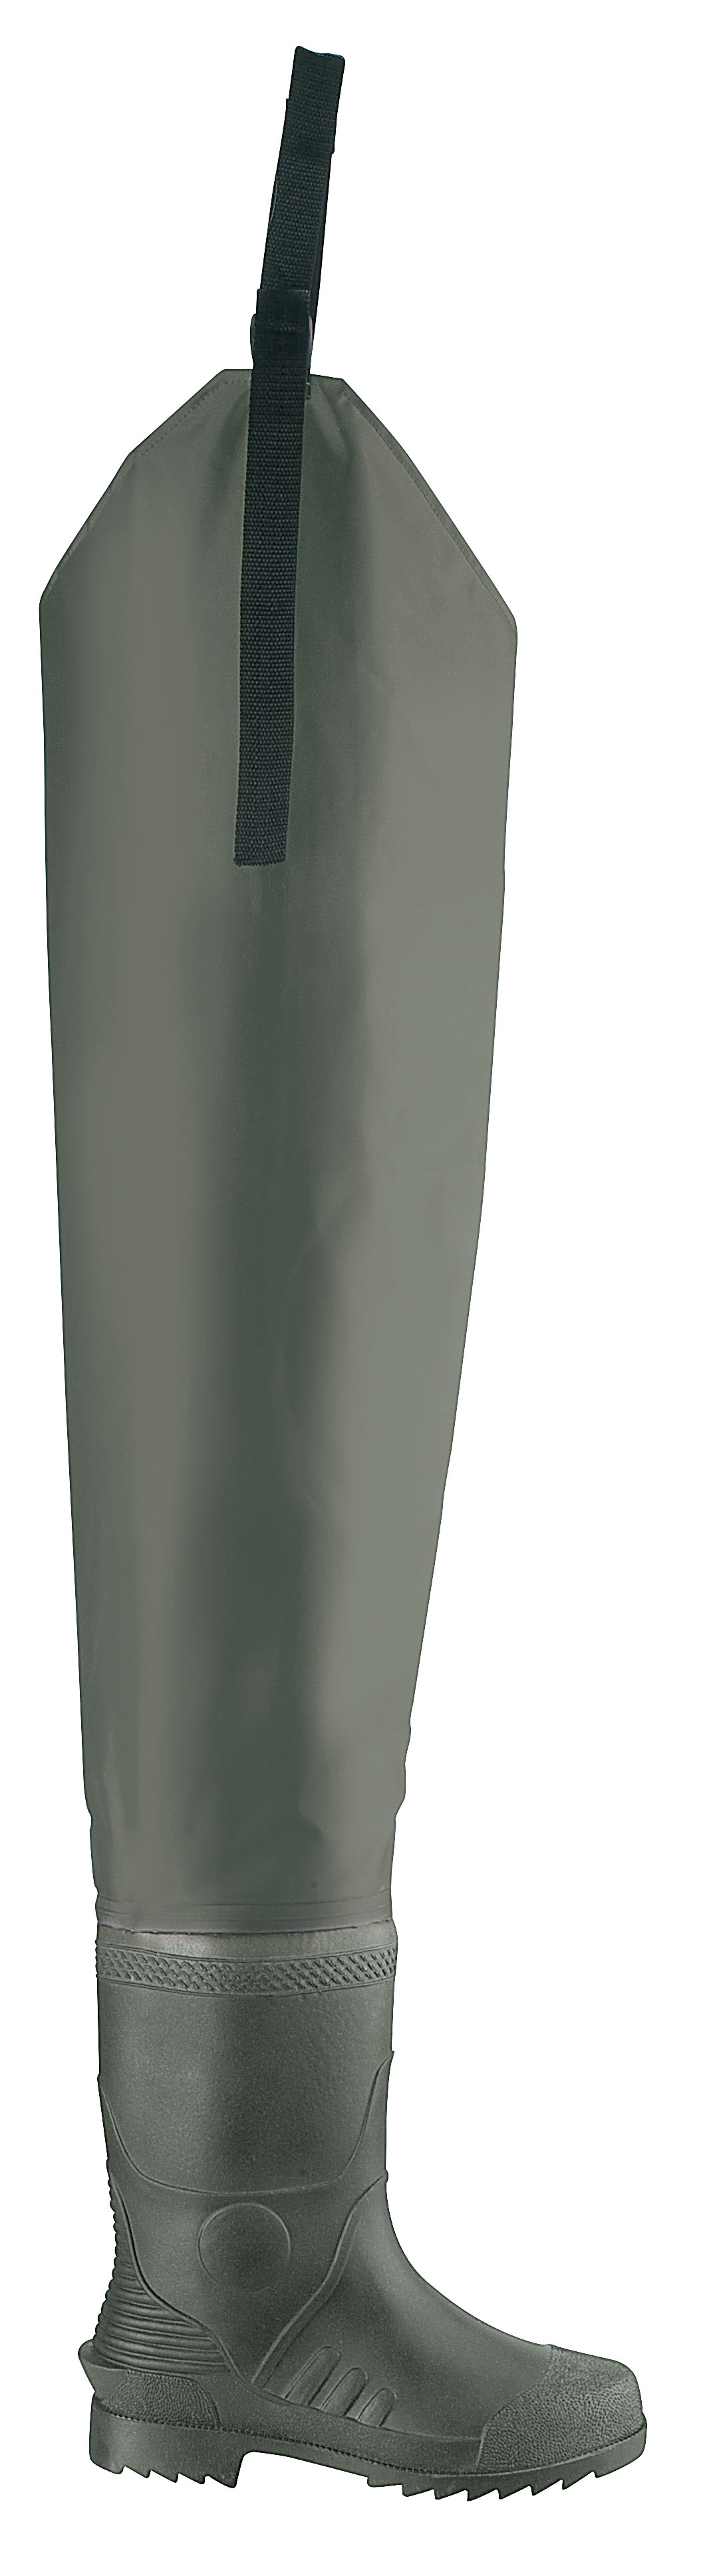 Trampolieri Cormoran Hip (Nylon/PVC)